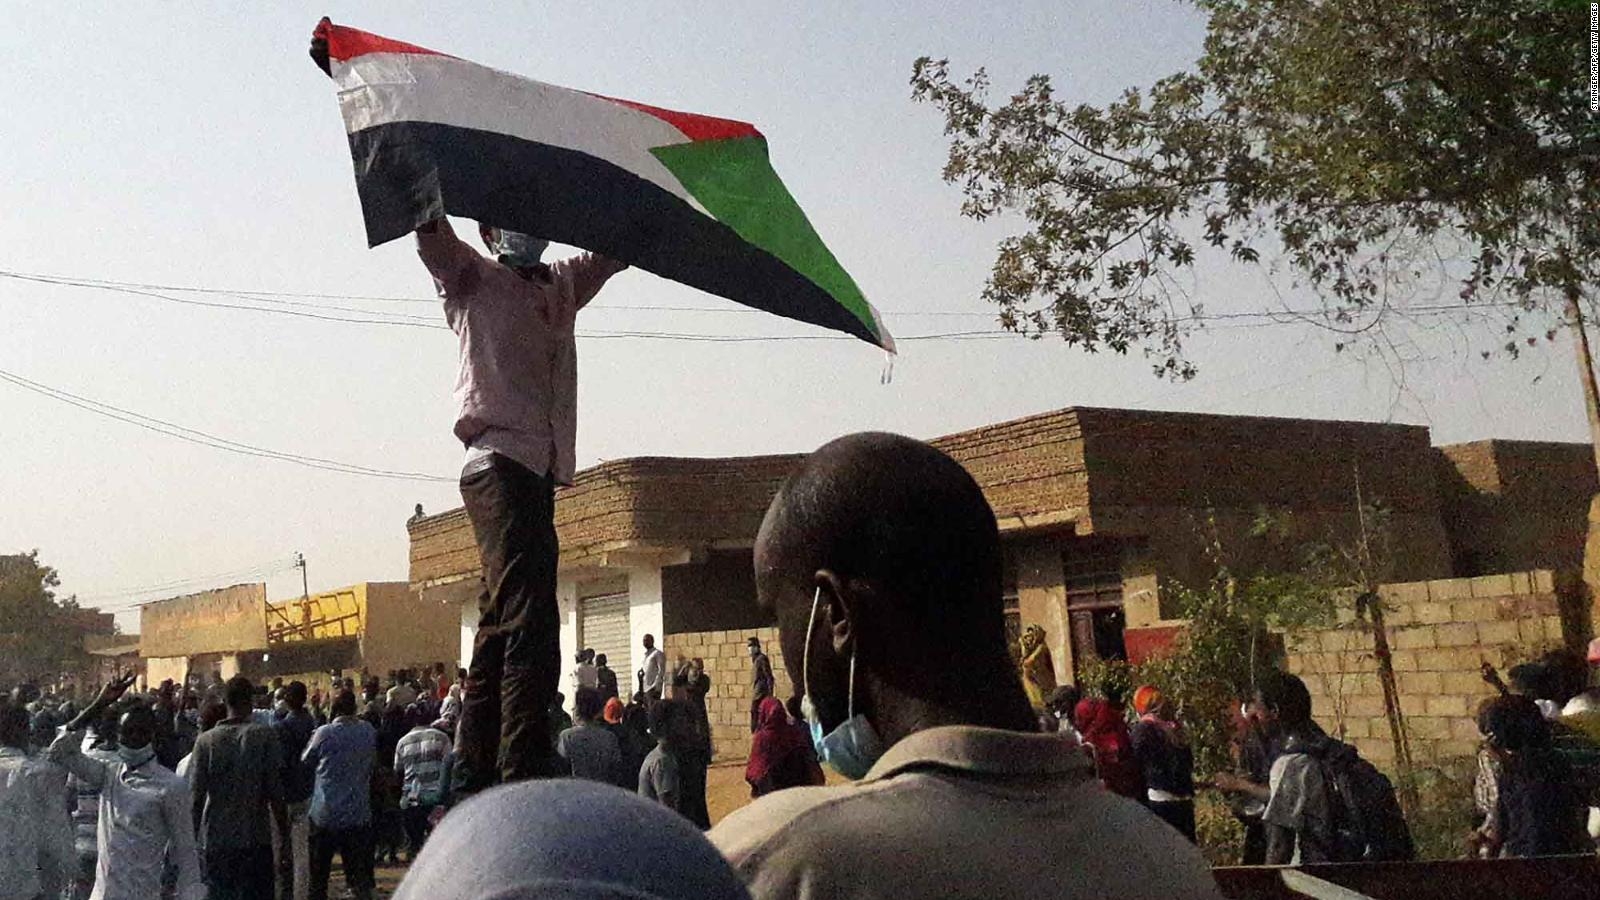 190405153211-03-sudan-anti-government-demonstration-file-full-169.jpg